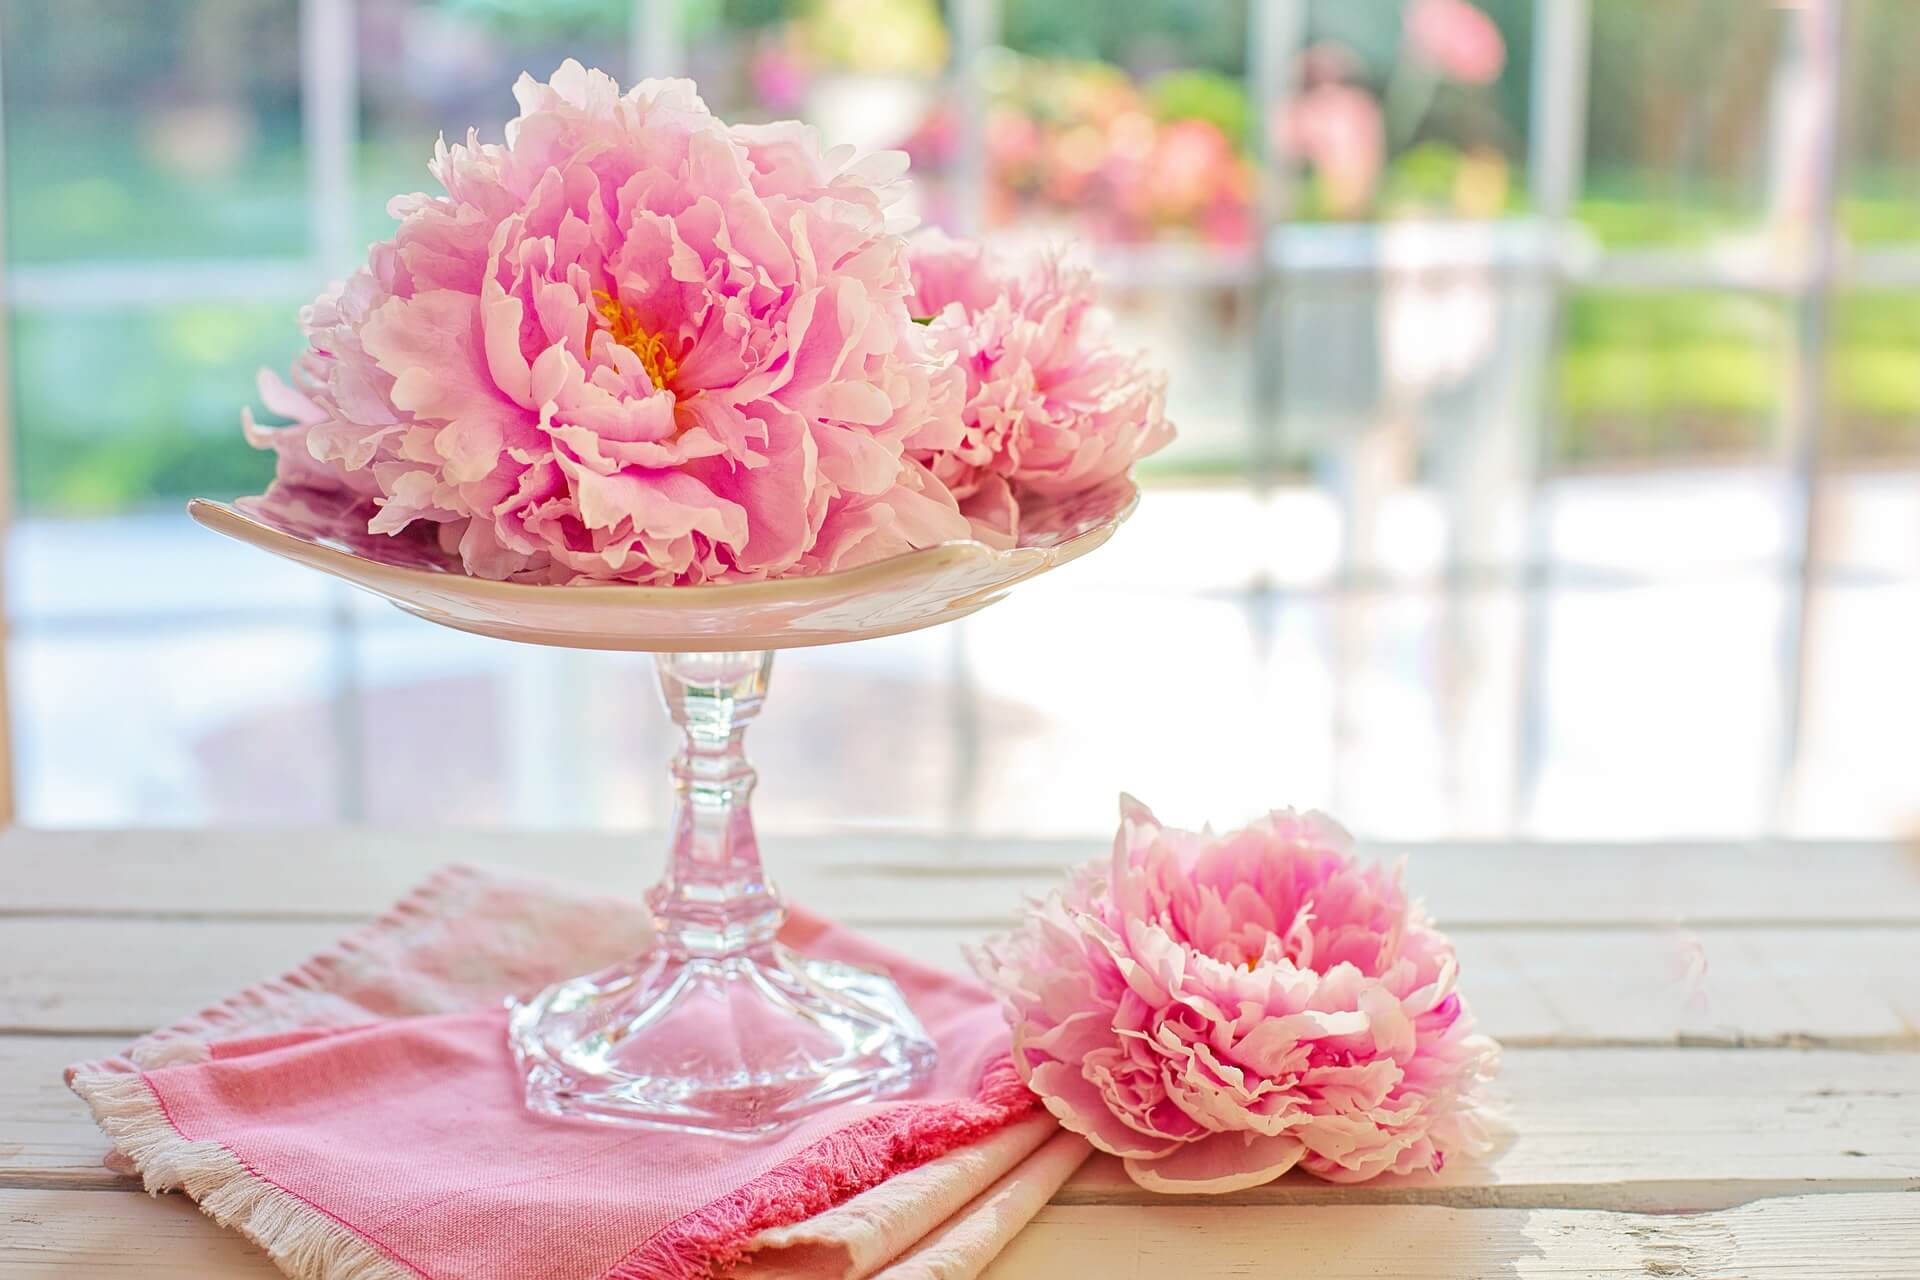 Unique Floral Arrangement Ideas for Your Wedding